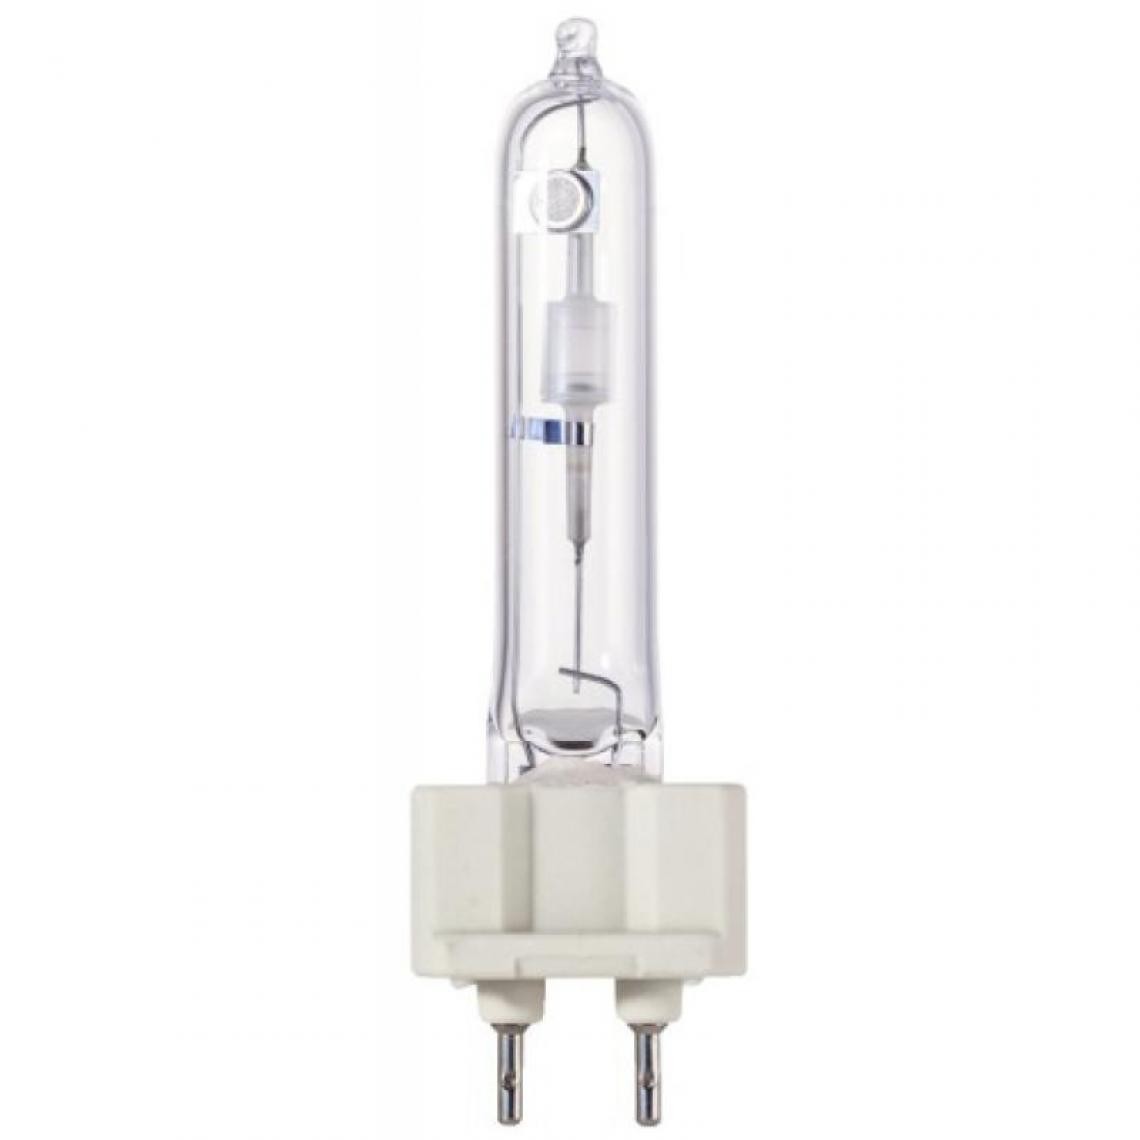 Ge Lighting - Lampe iodure métallique bruleur céramique G12 150W 4200k - Ampoules LED